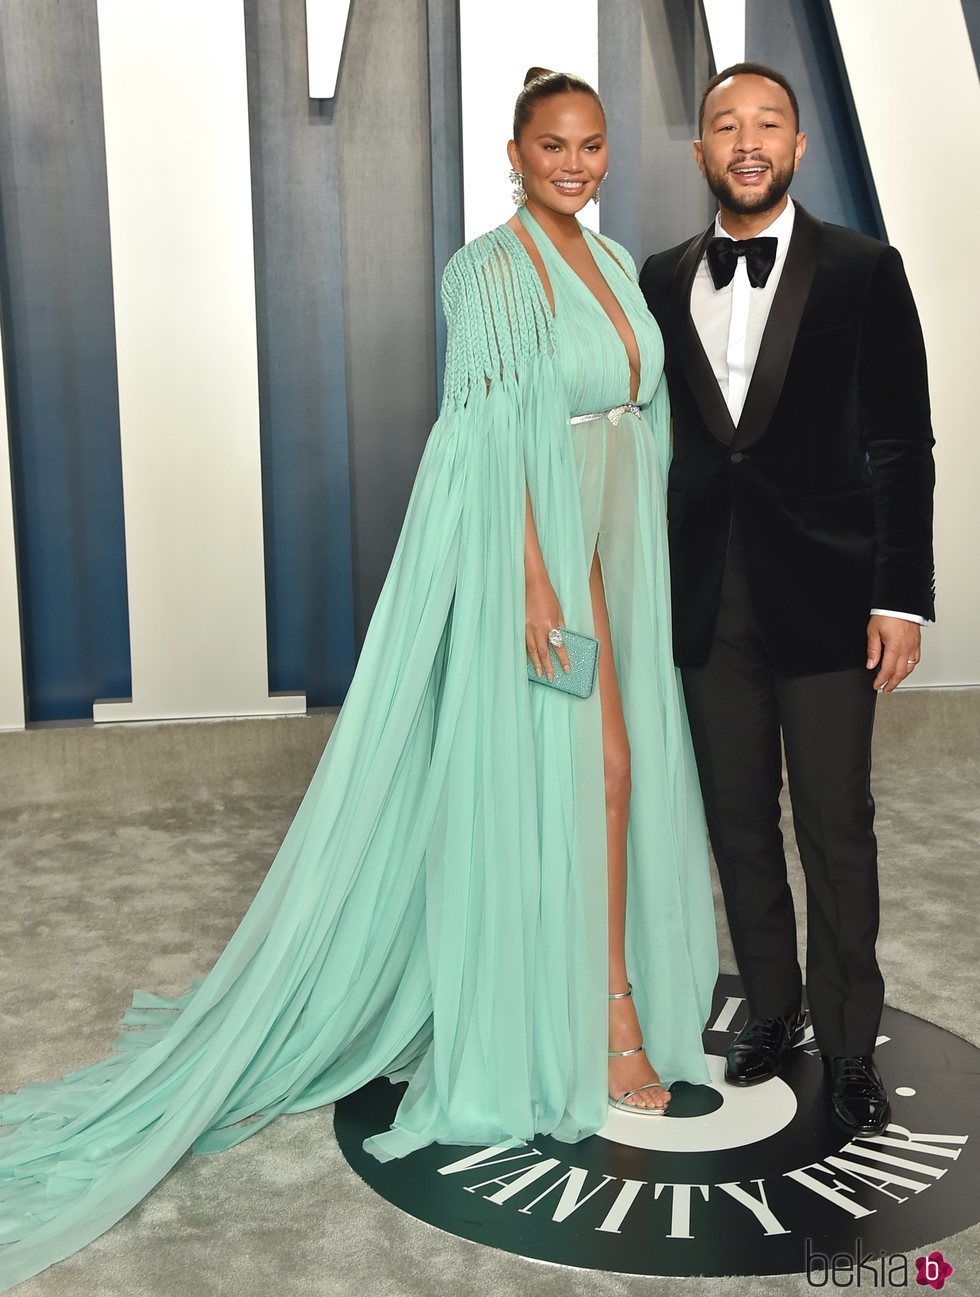 Chrissy Teigen y John Legend en la fiesta de Vanity Fair tras los Oscar 2020